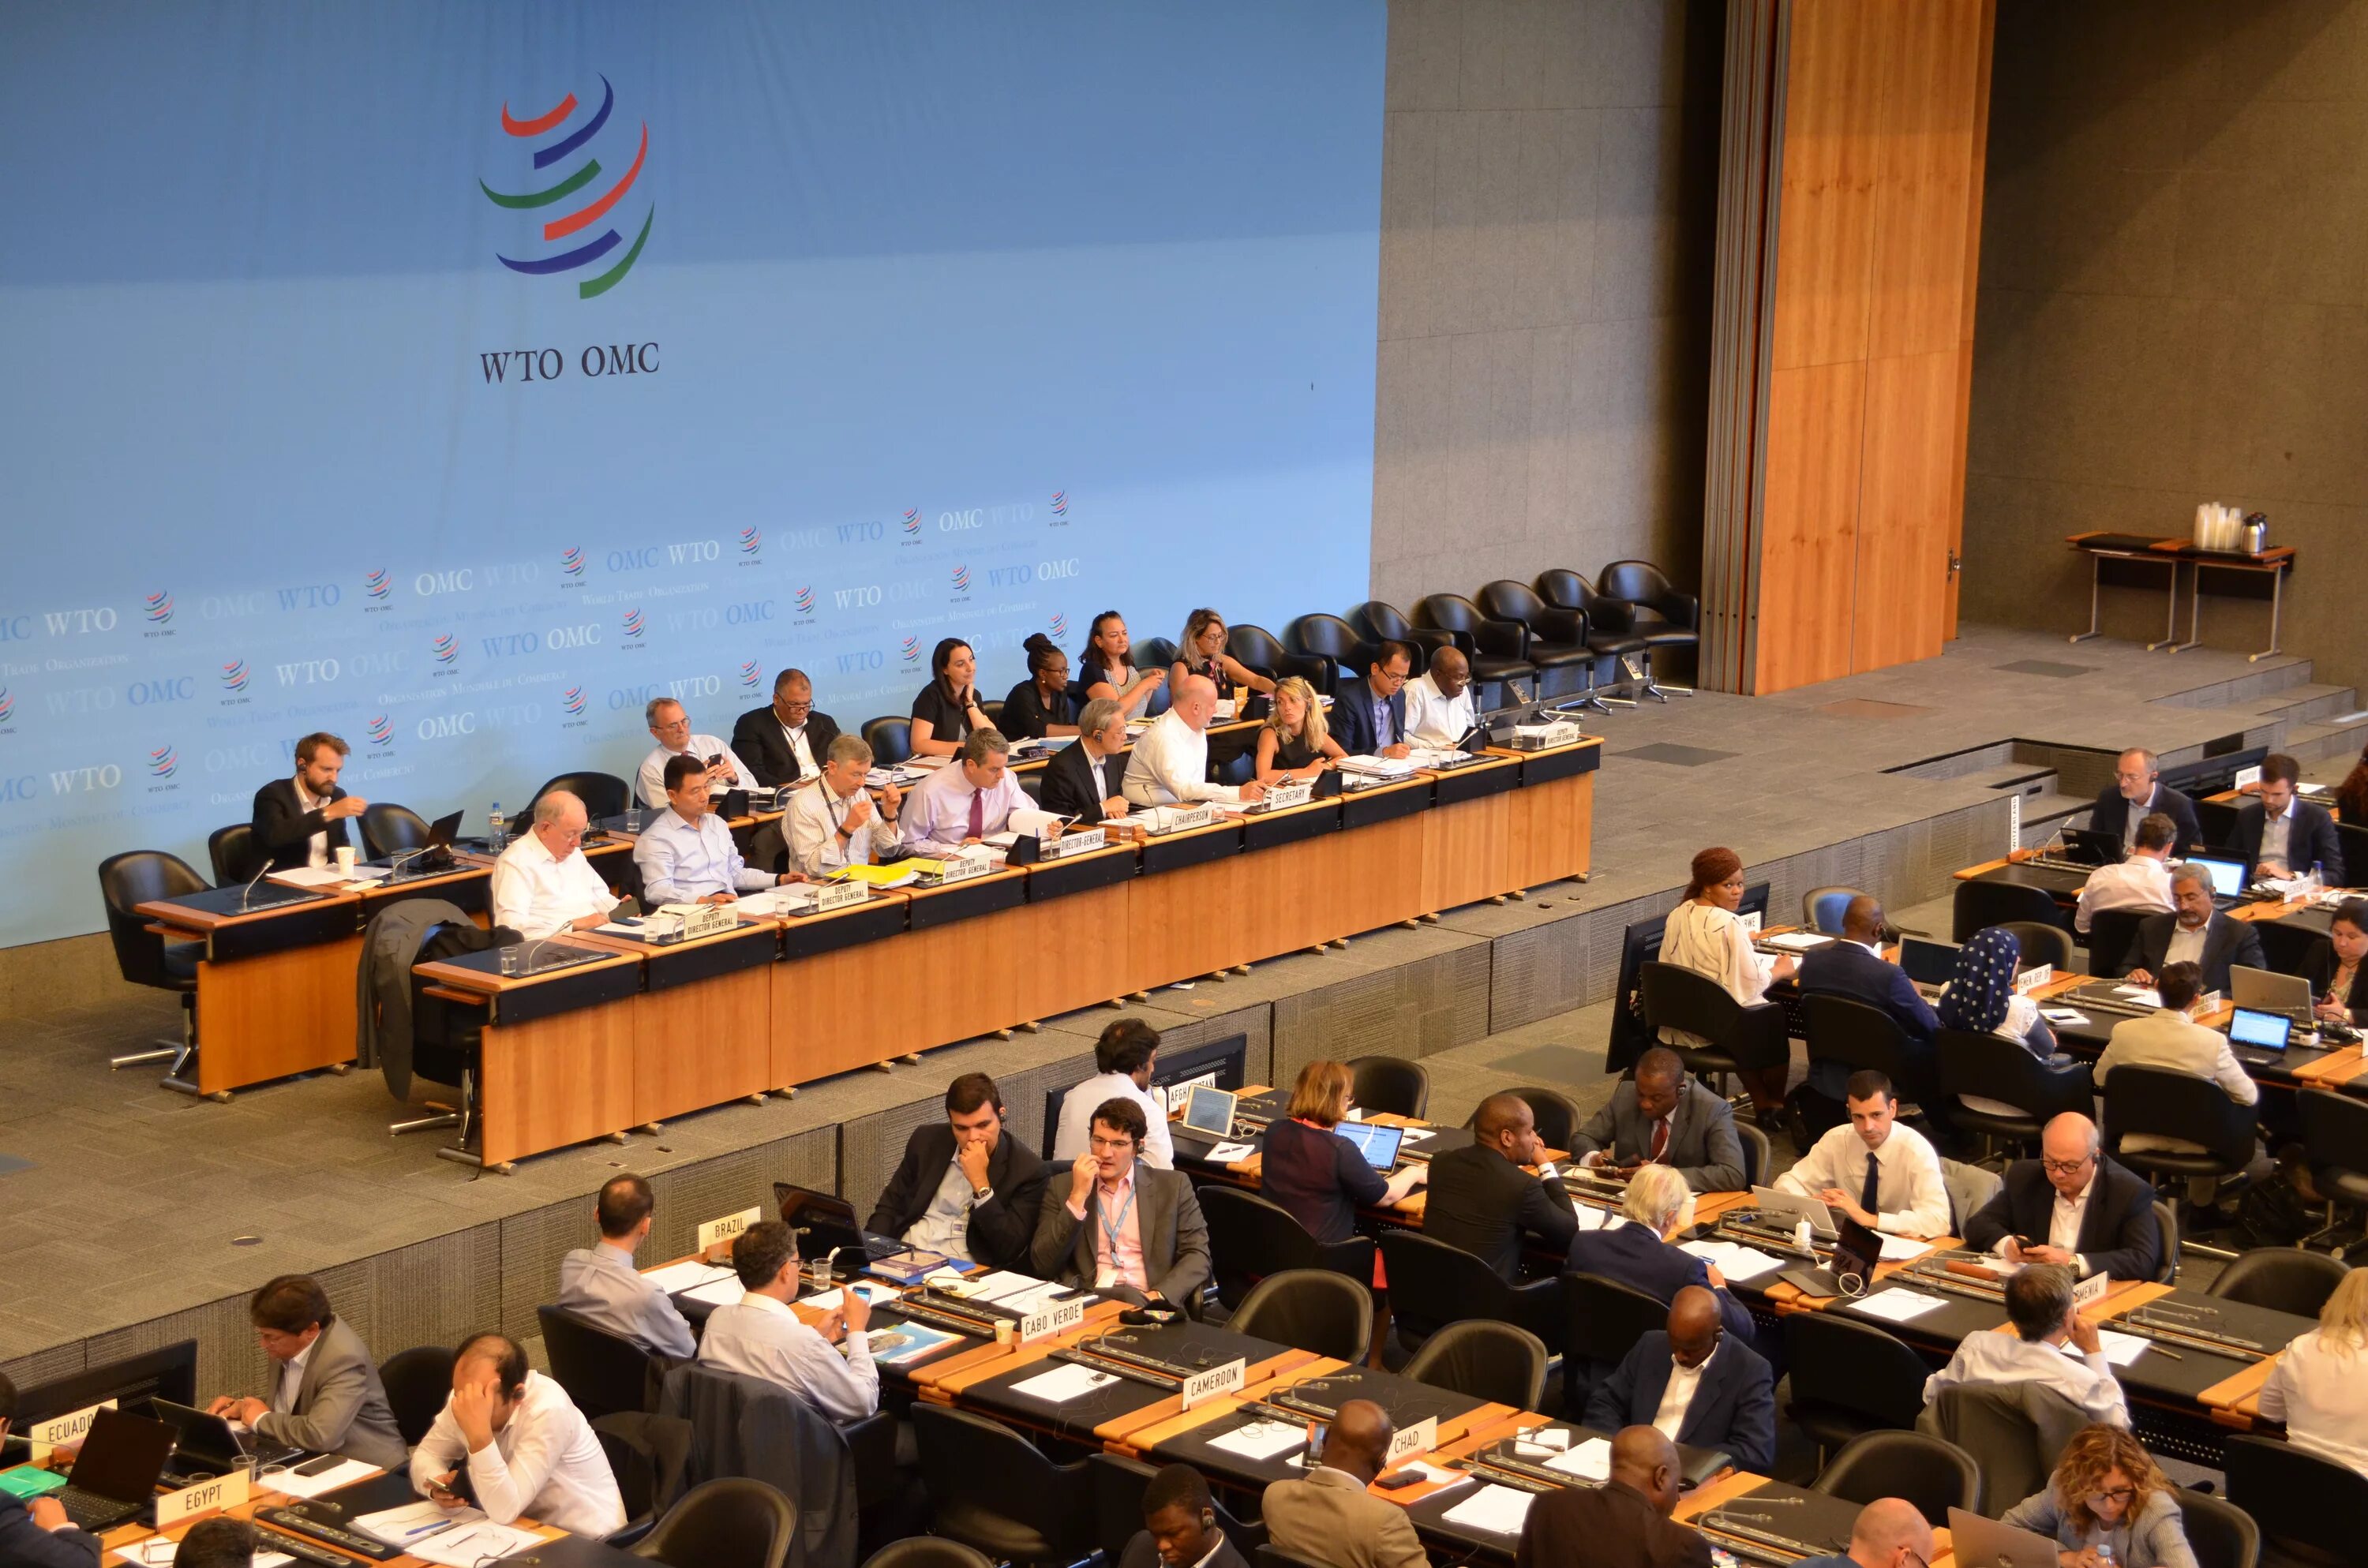 Вто оон. Всемирная торговая организация - ВТО (World trade Organization - WTO).. Конференция министров ВТО. Заседание ВТО. Министерская конференция ВТО.